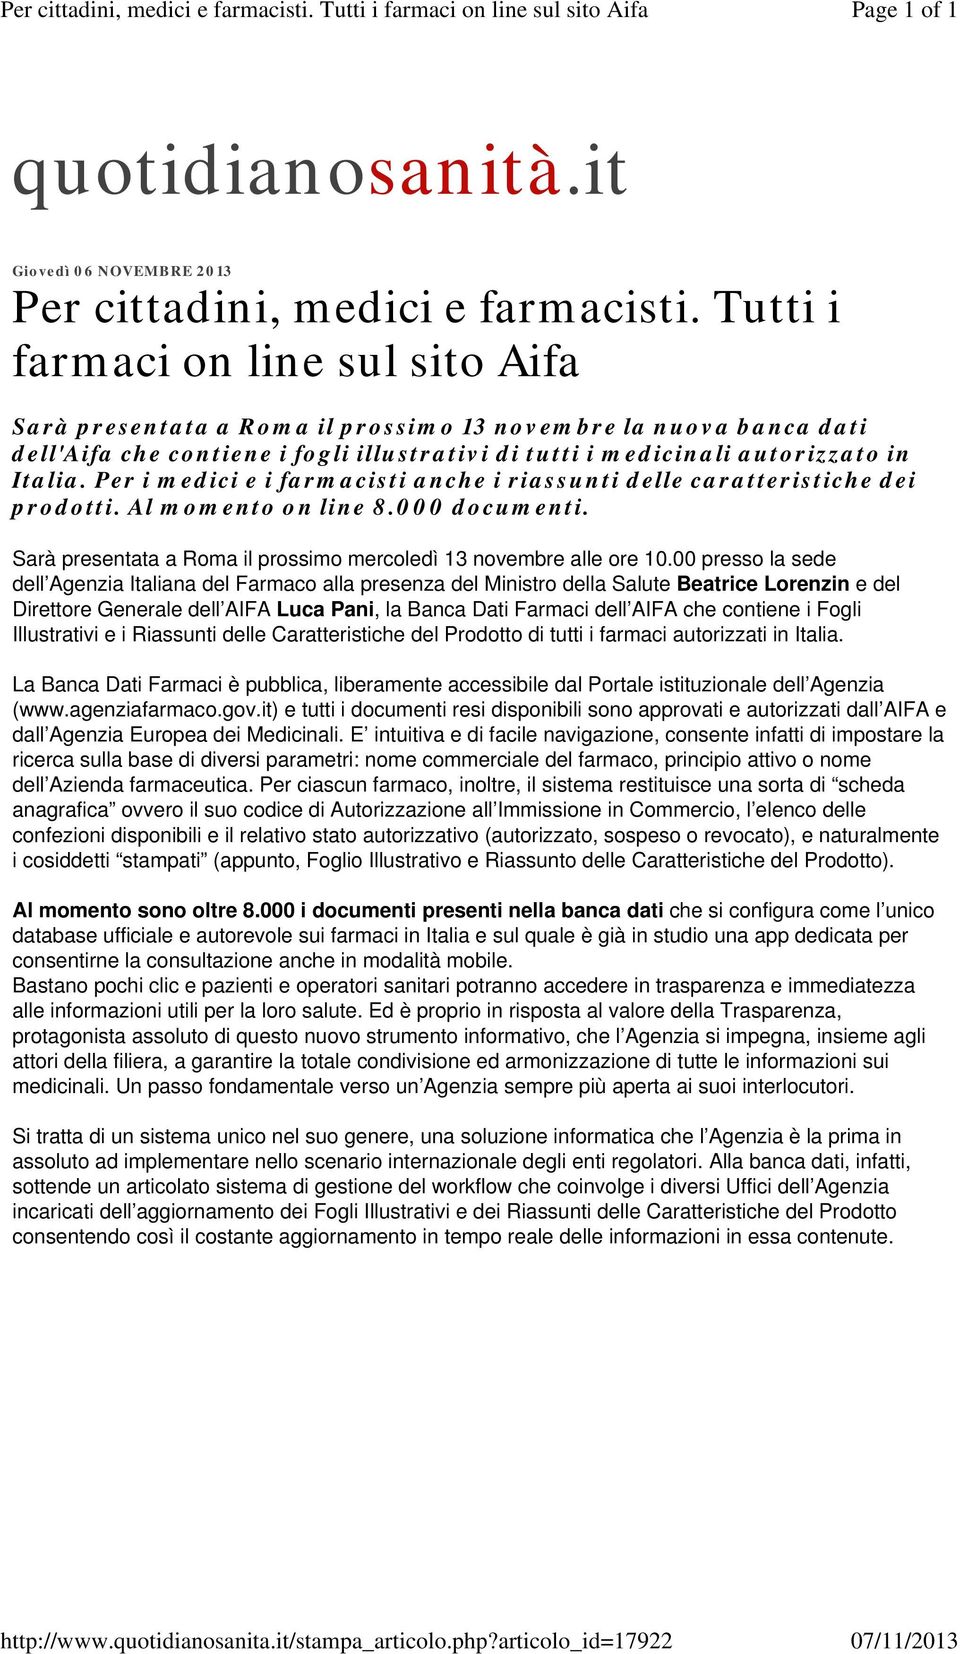 Tutti i farmaci on line sul sito Aifa Sarà presentata a Roma il prossimo 13 novembre la nuova banca dati dell'aifa che contiene i fogli illustrativi di tutti i medicinali autorizzato in Italia.